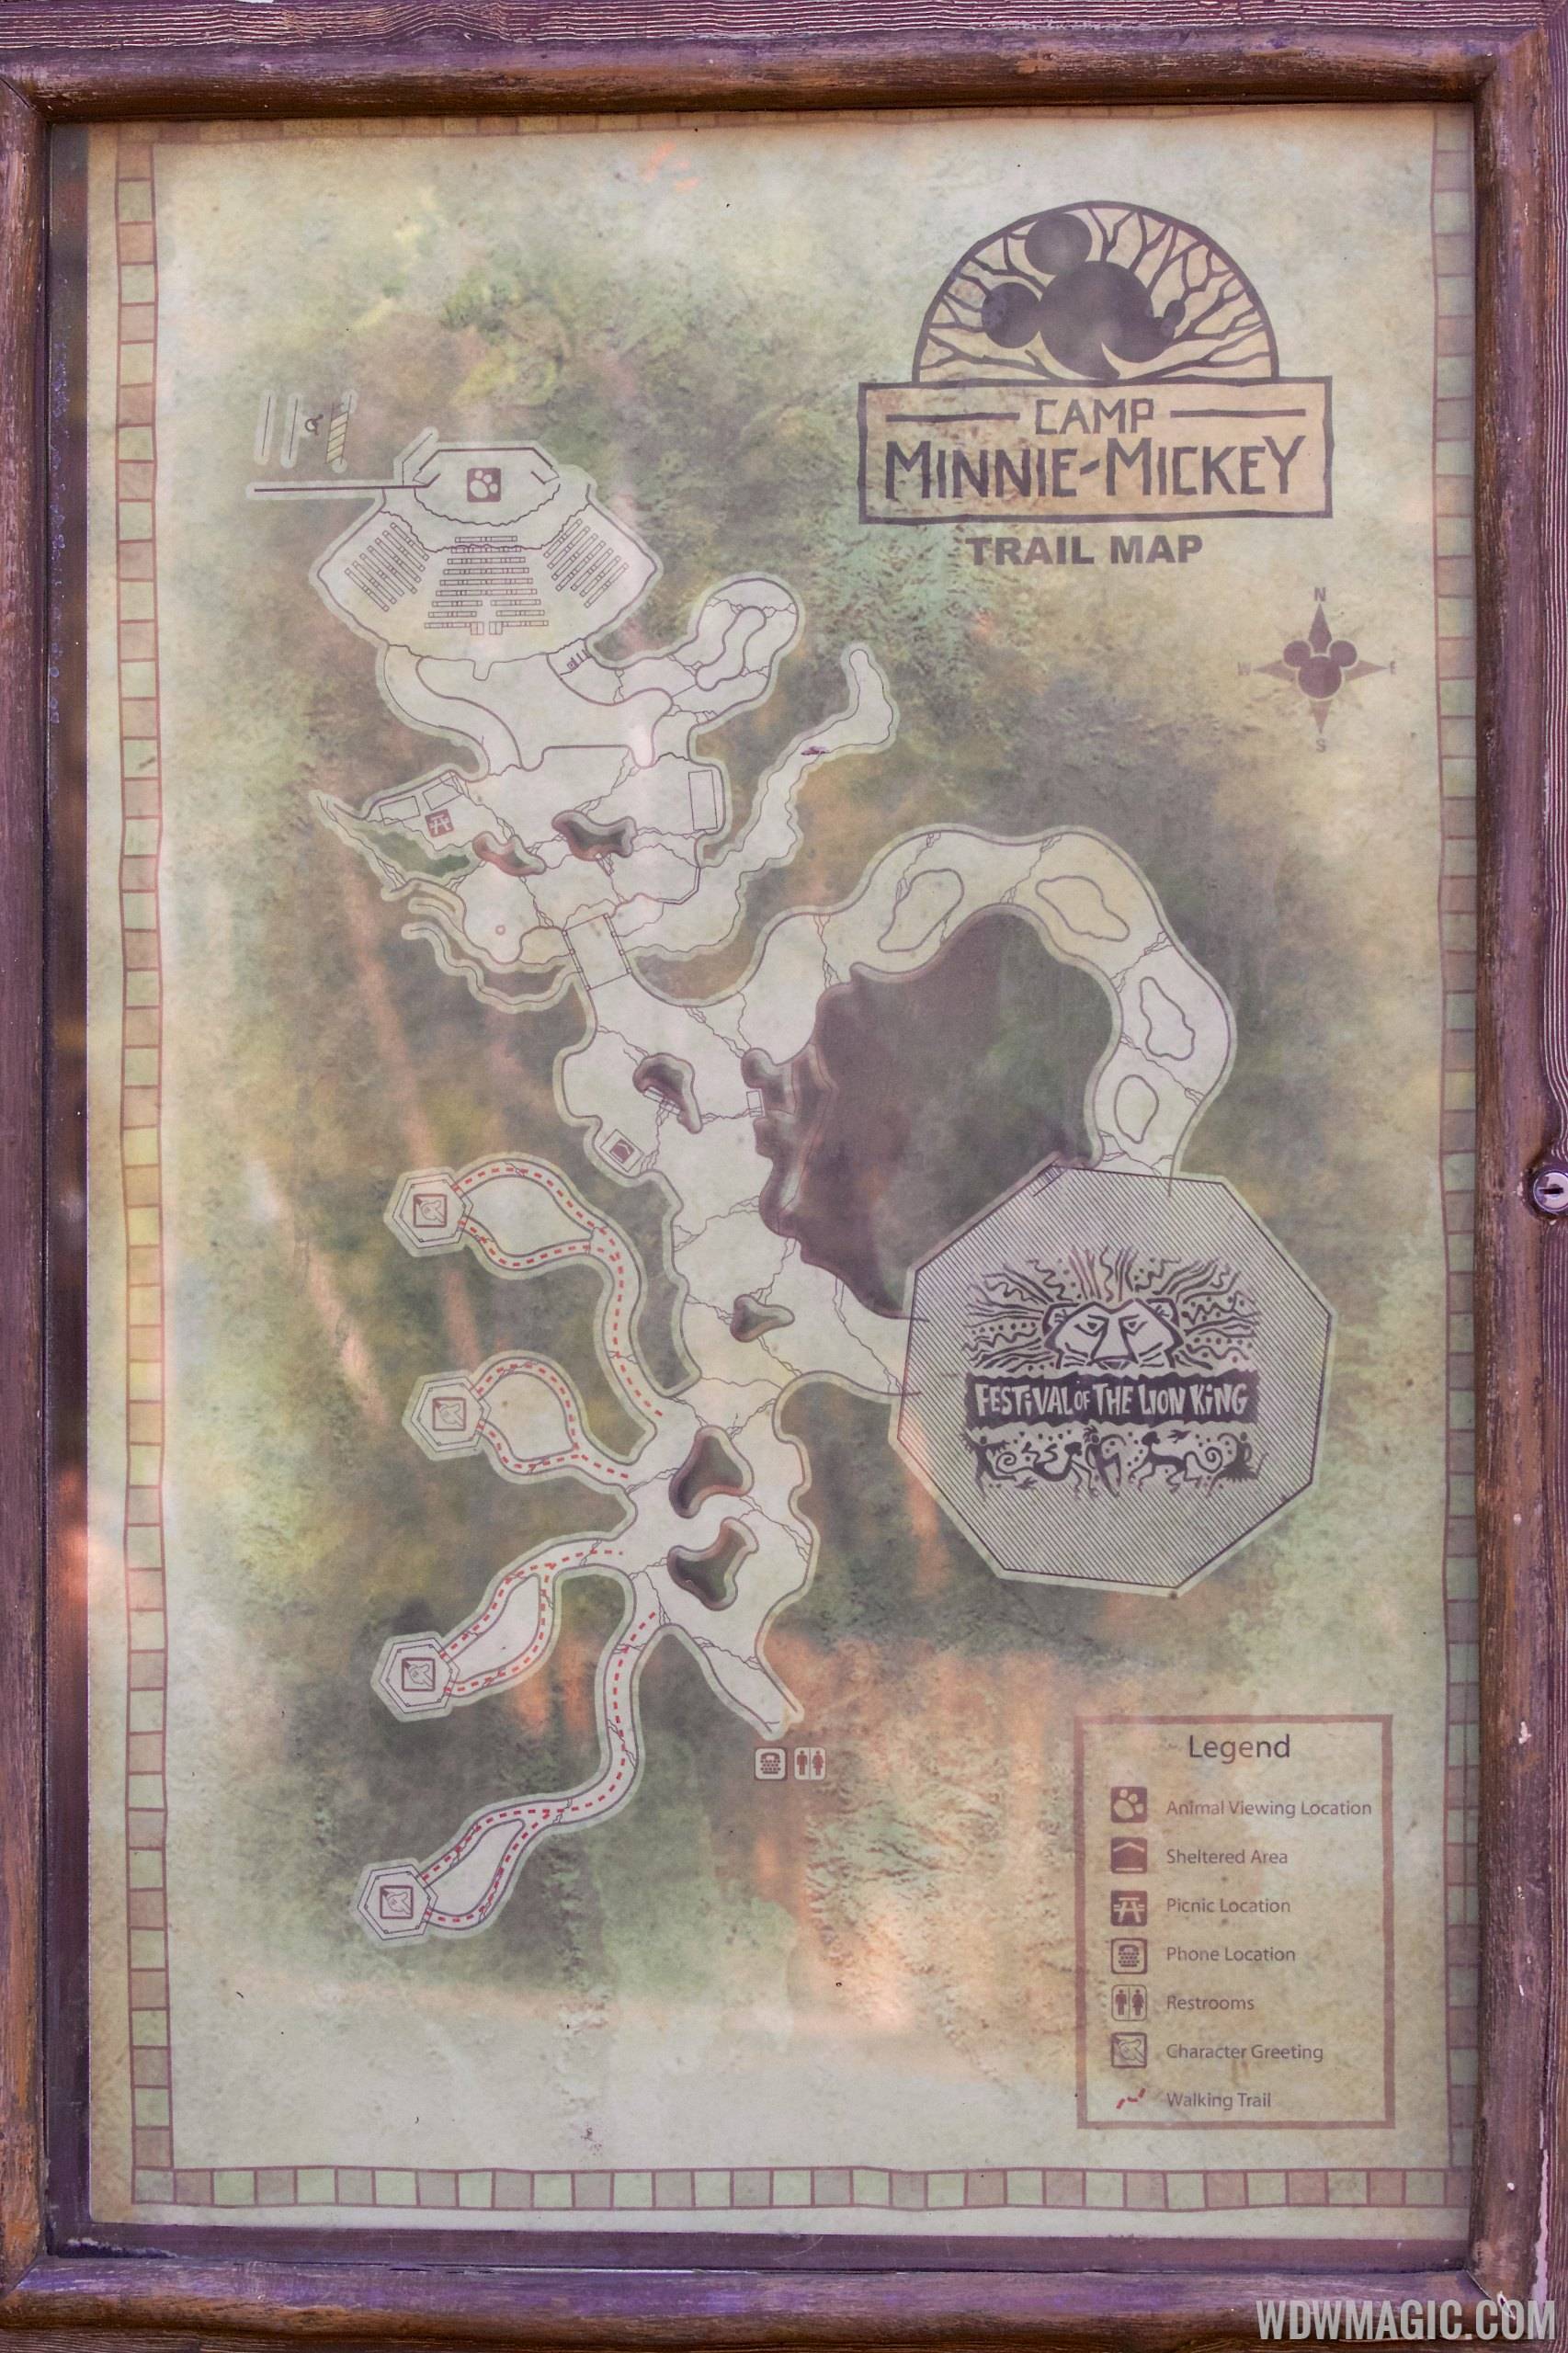 Camp Minnie-Mickey - Trail map